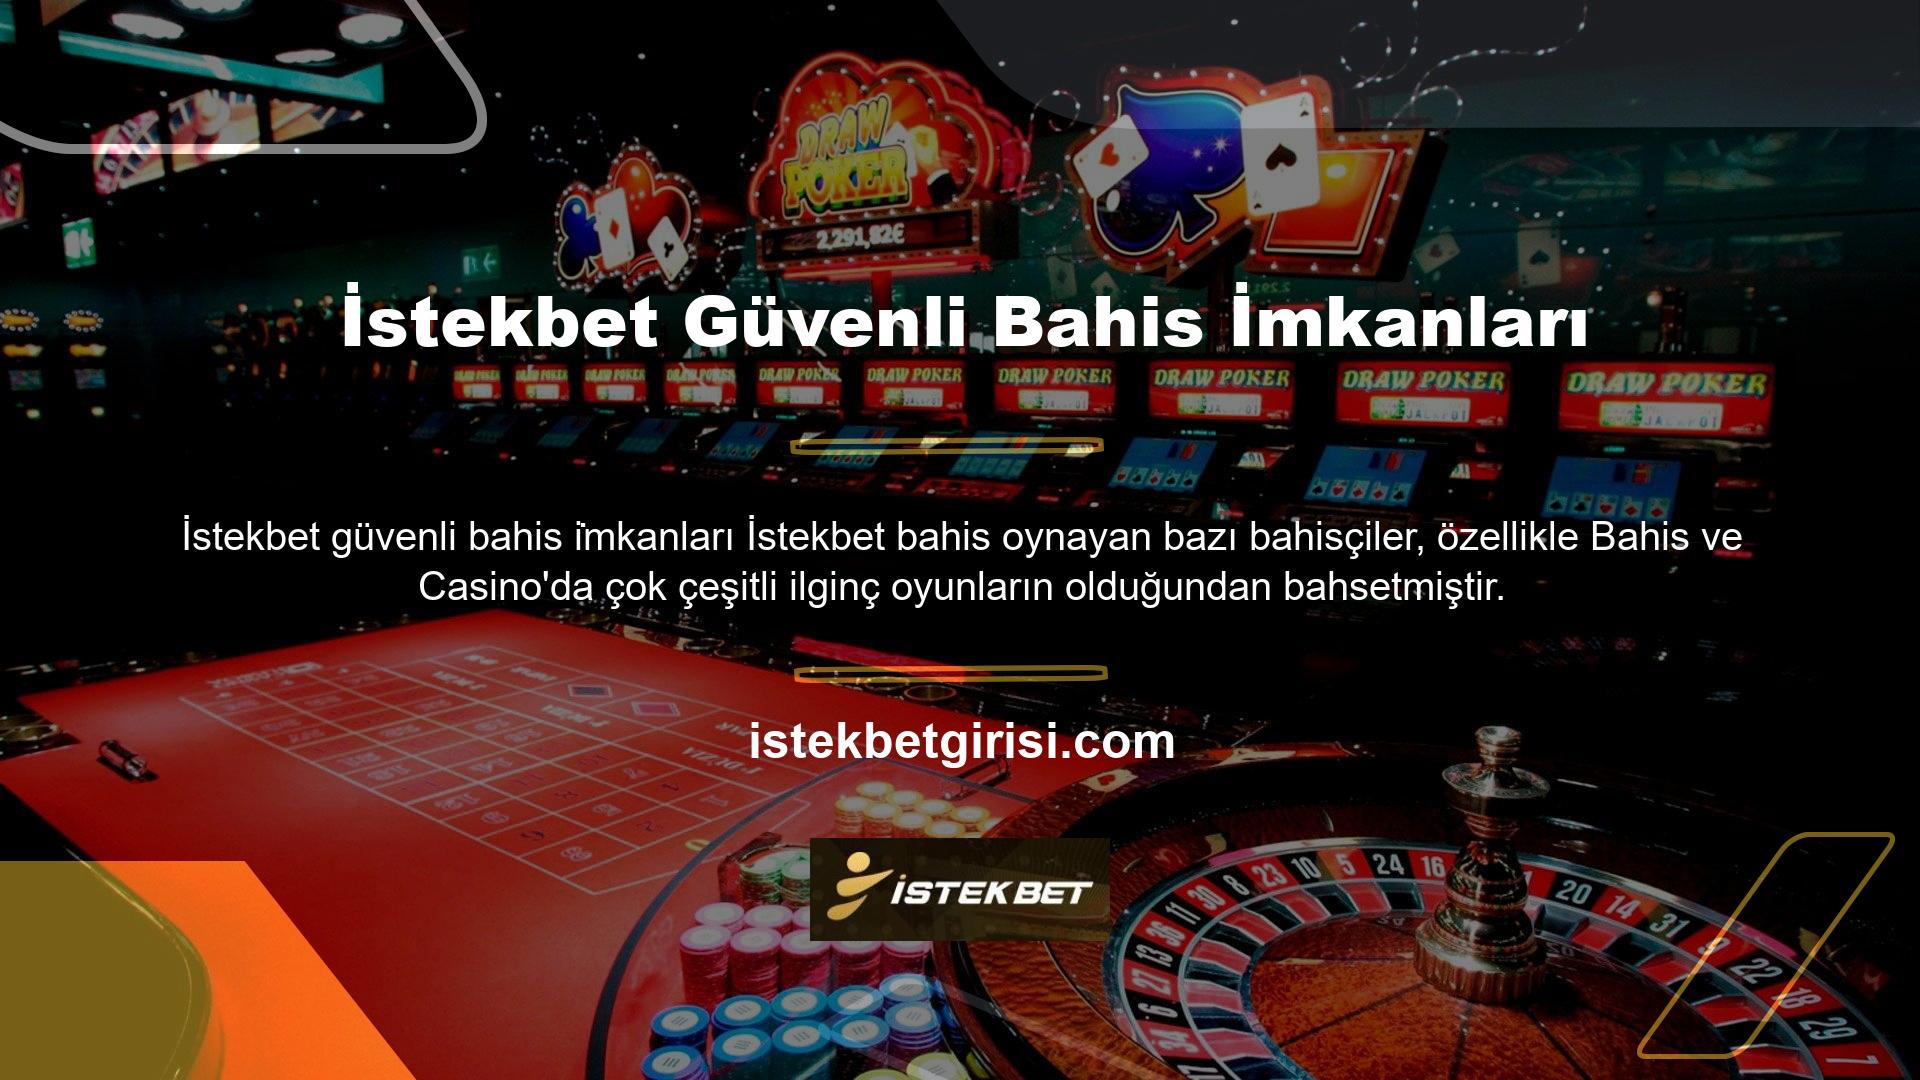 İstekbet bu bahisler ve casino oyunları için çeşitli bonuslar ve aktiviteler hazırladığı da belirtiliyor